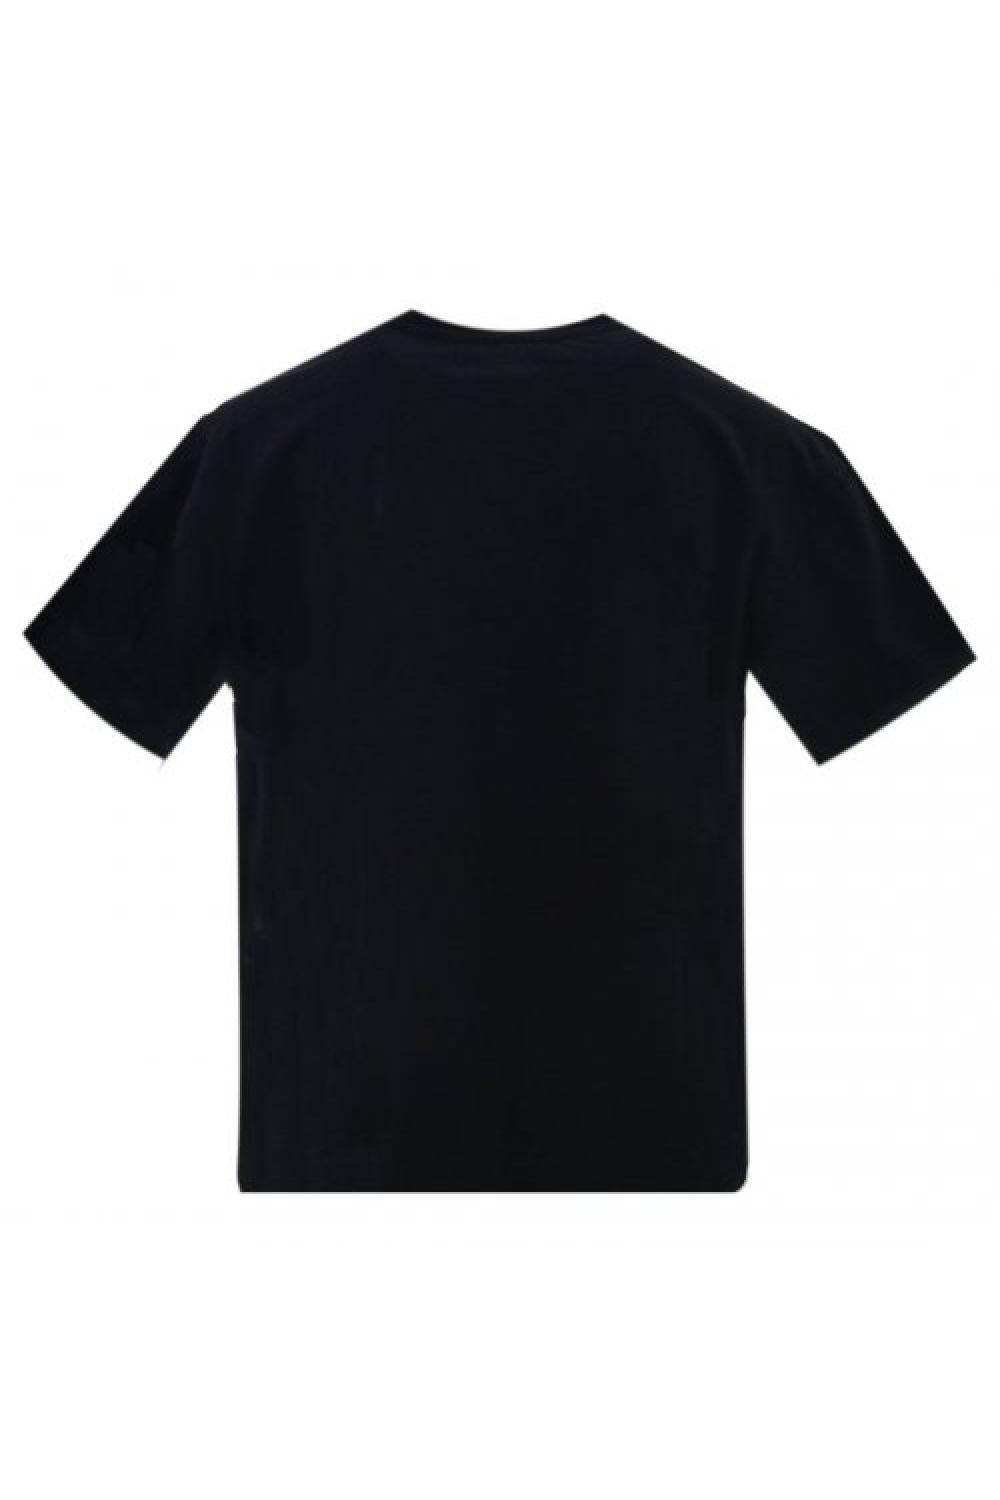 STAFF T-shirt Tessa Women - Black (63-013.047-N0090)